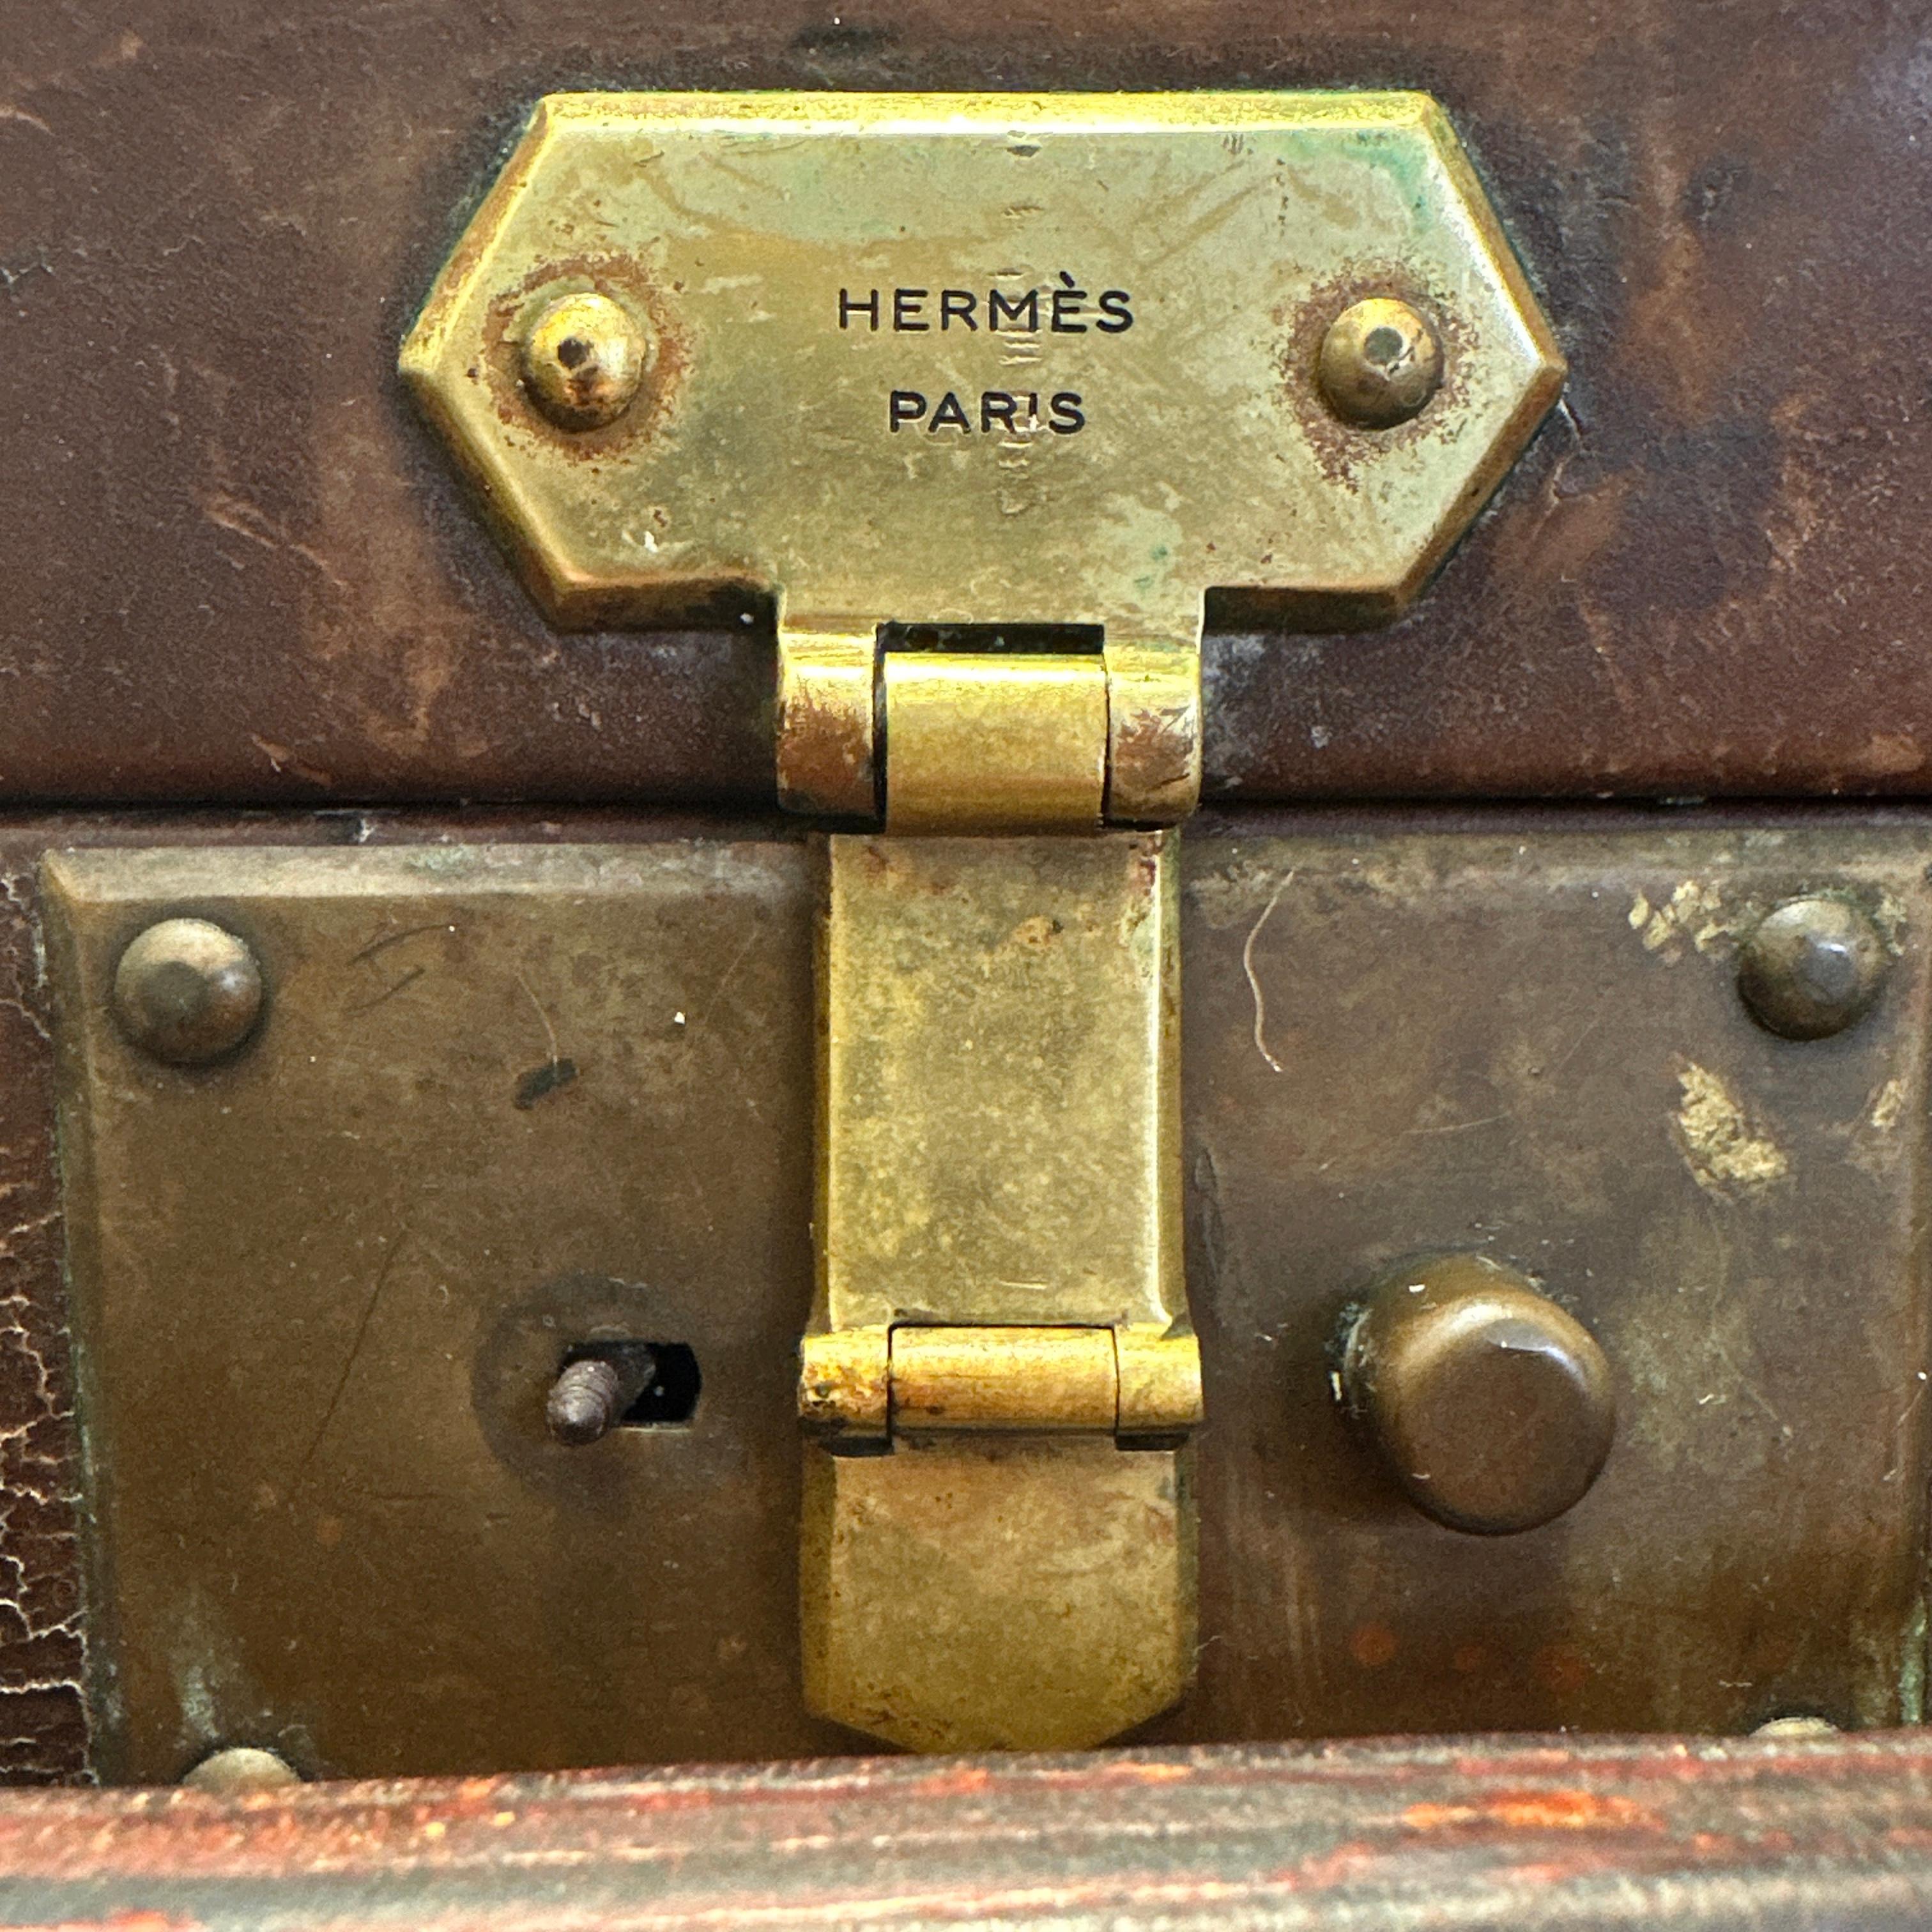 Voici une magnifique et rare valise en cuir Hermès vintage. Ce beau bagage est en bon état pour son âge, avec des traces d'usure dues à l'âge et à l'utilisation, comme le montrent les photos. Une nouvelle poignée vient d'être installée et les